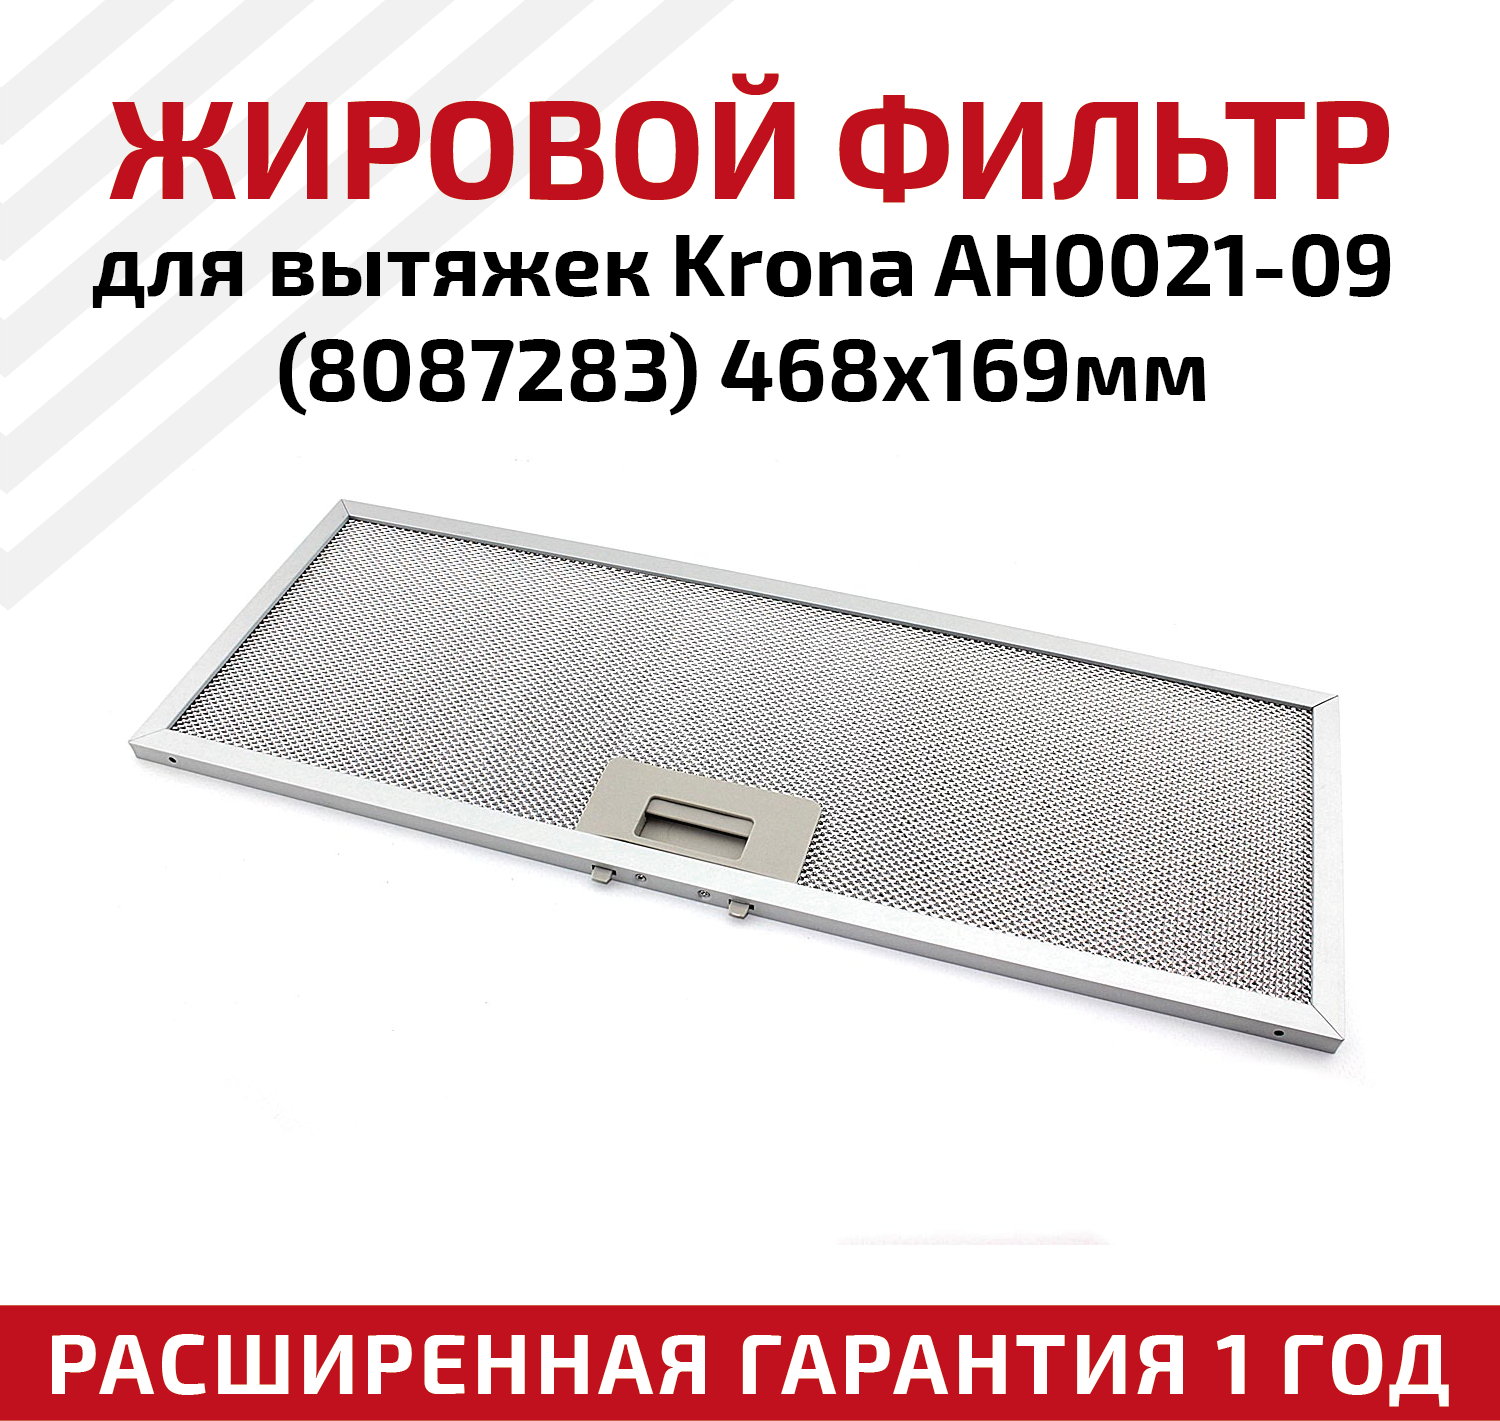 Жировой фильтр (кассета) алюминиевый (металлический) рамочный для вытяжек Krona AH0021-09, многоразовый, 468х169мм - фотография № 1